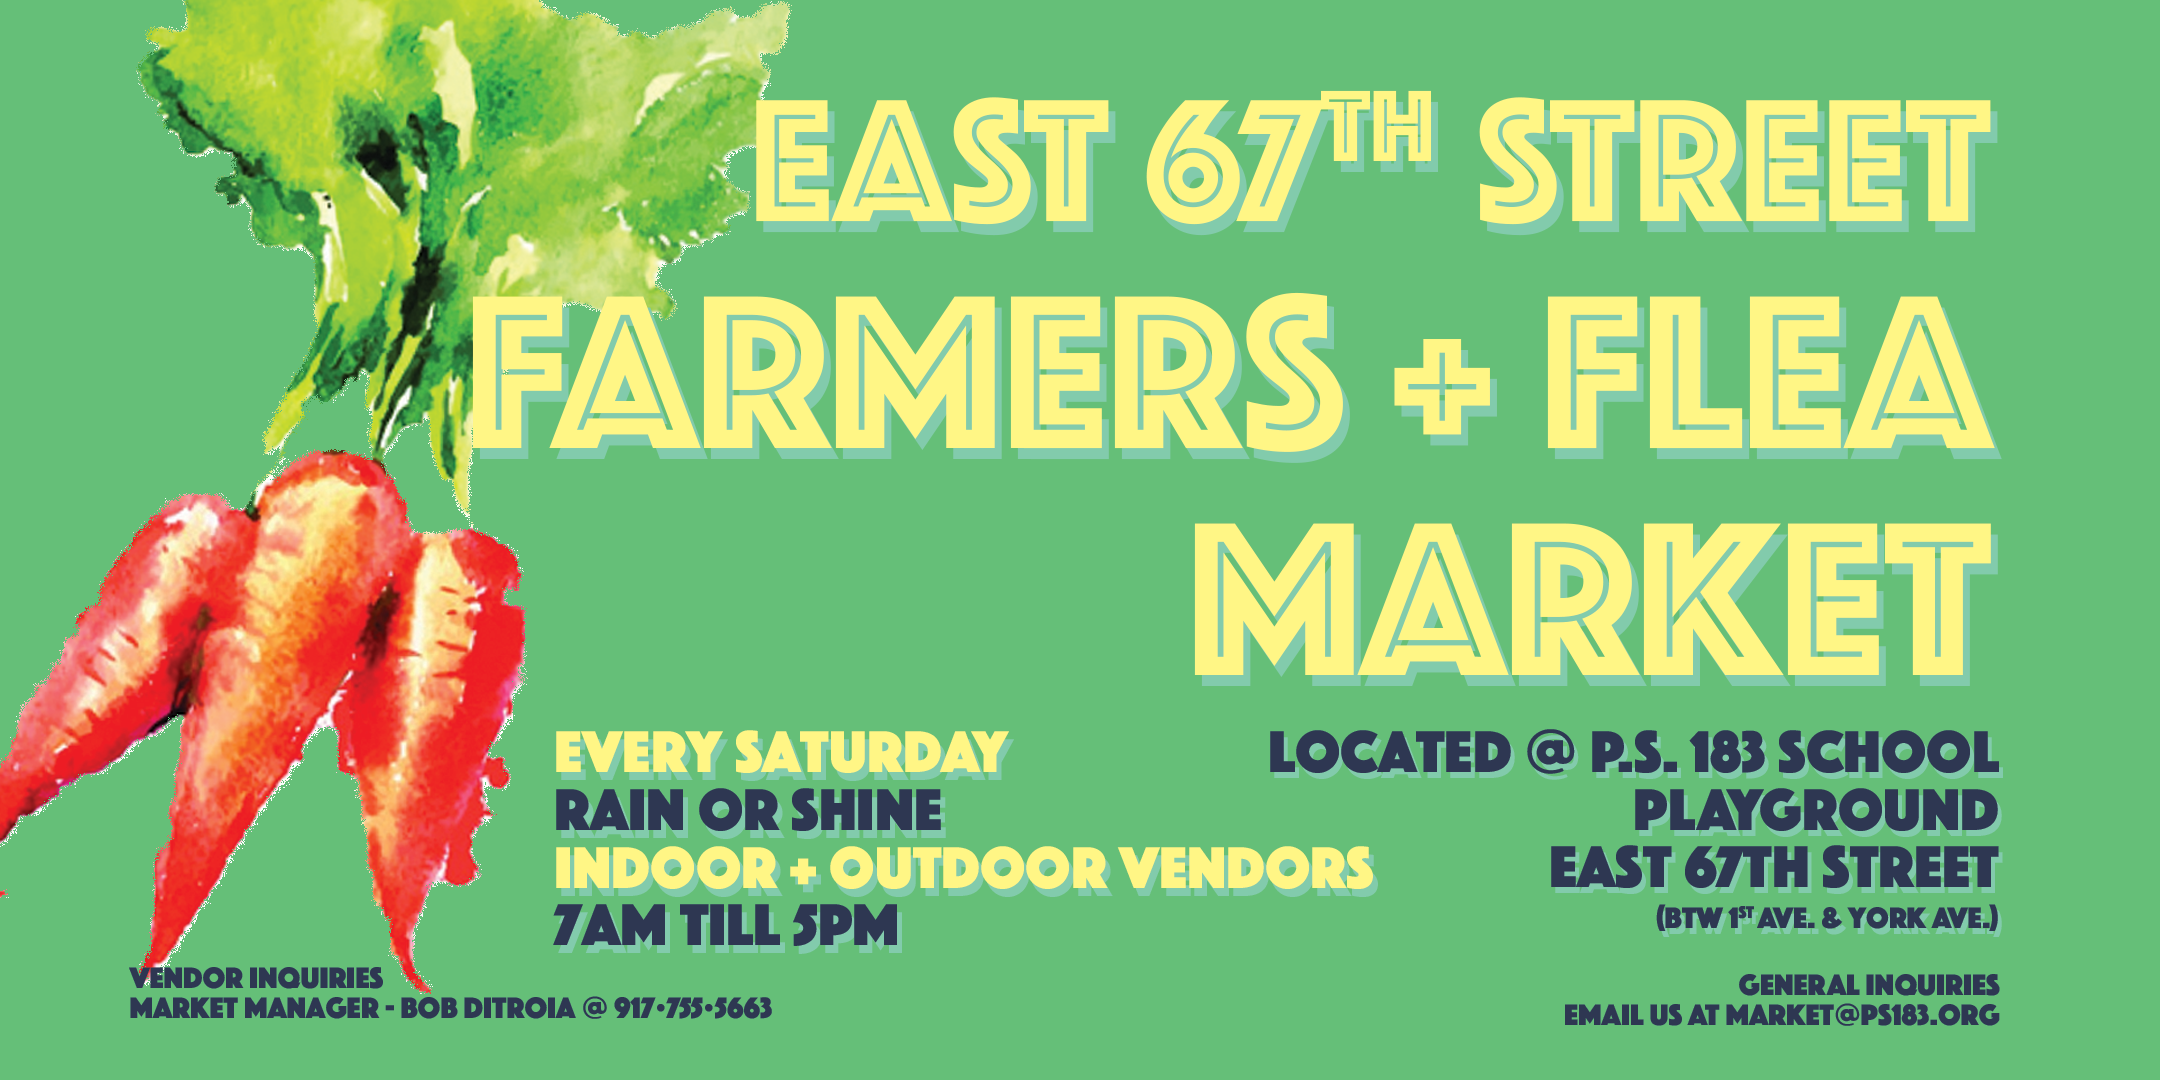 East 67th Street Farmers & Flea Market